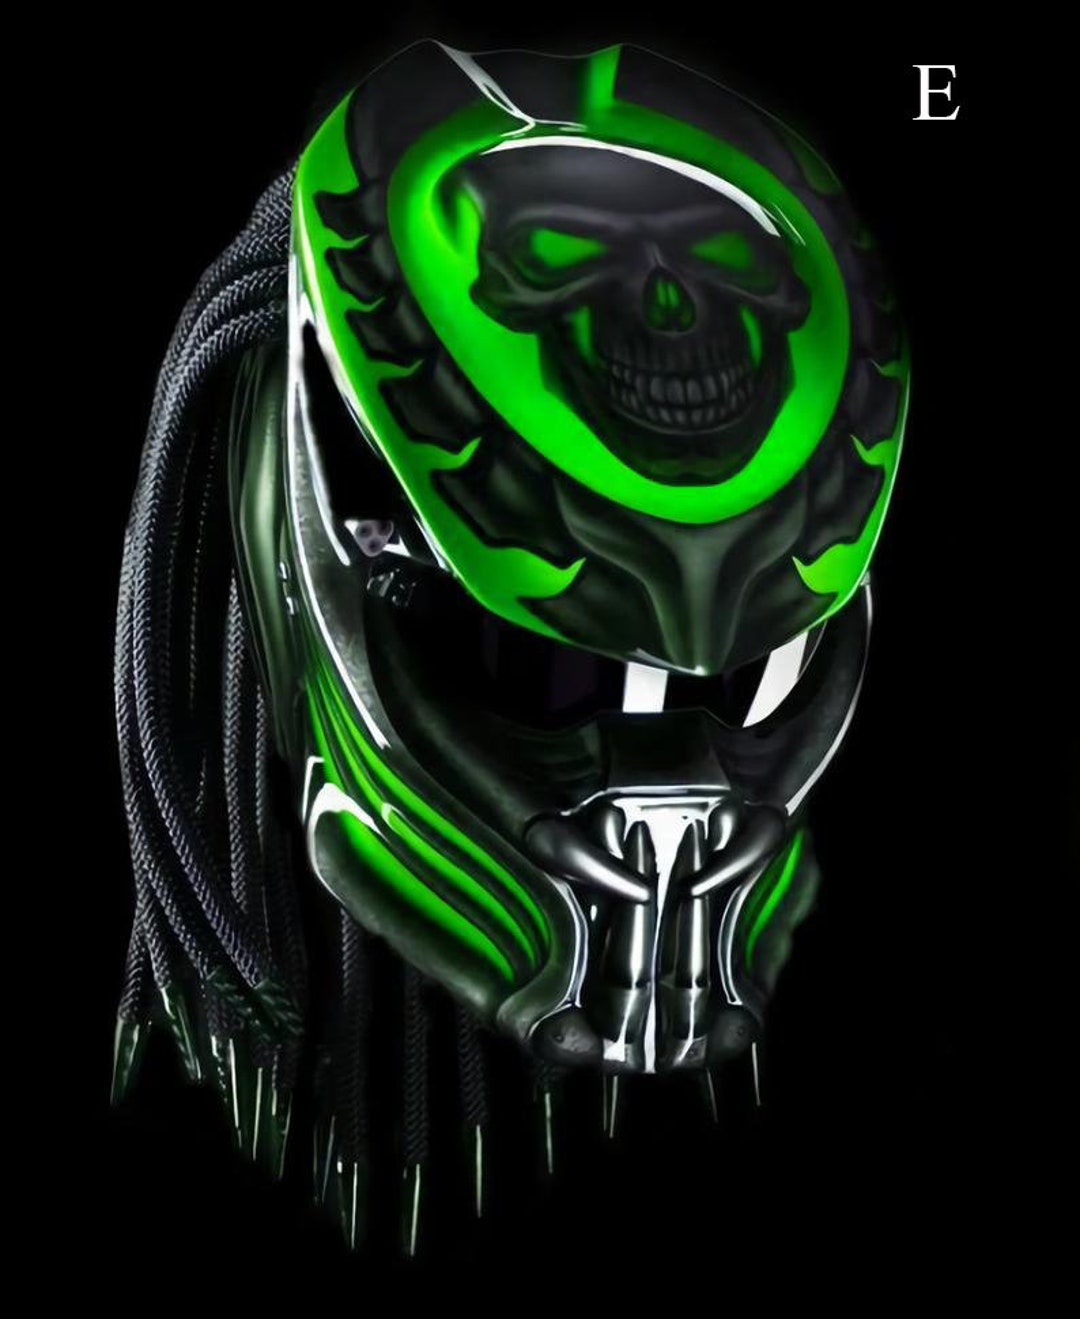 The Black Demon Skull Motorcycle Helmet Custom DOT ECE Approved